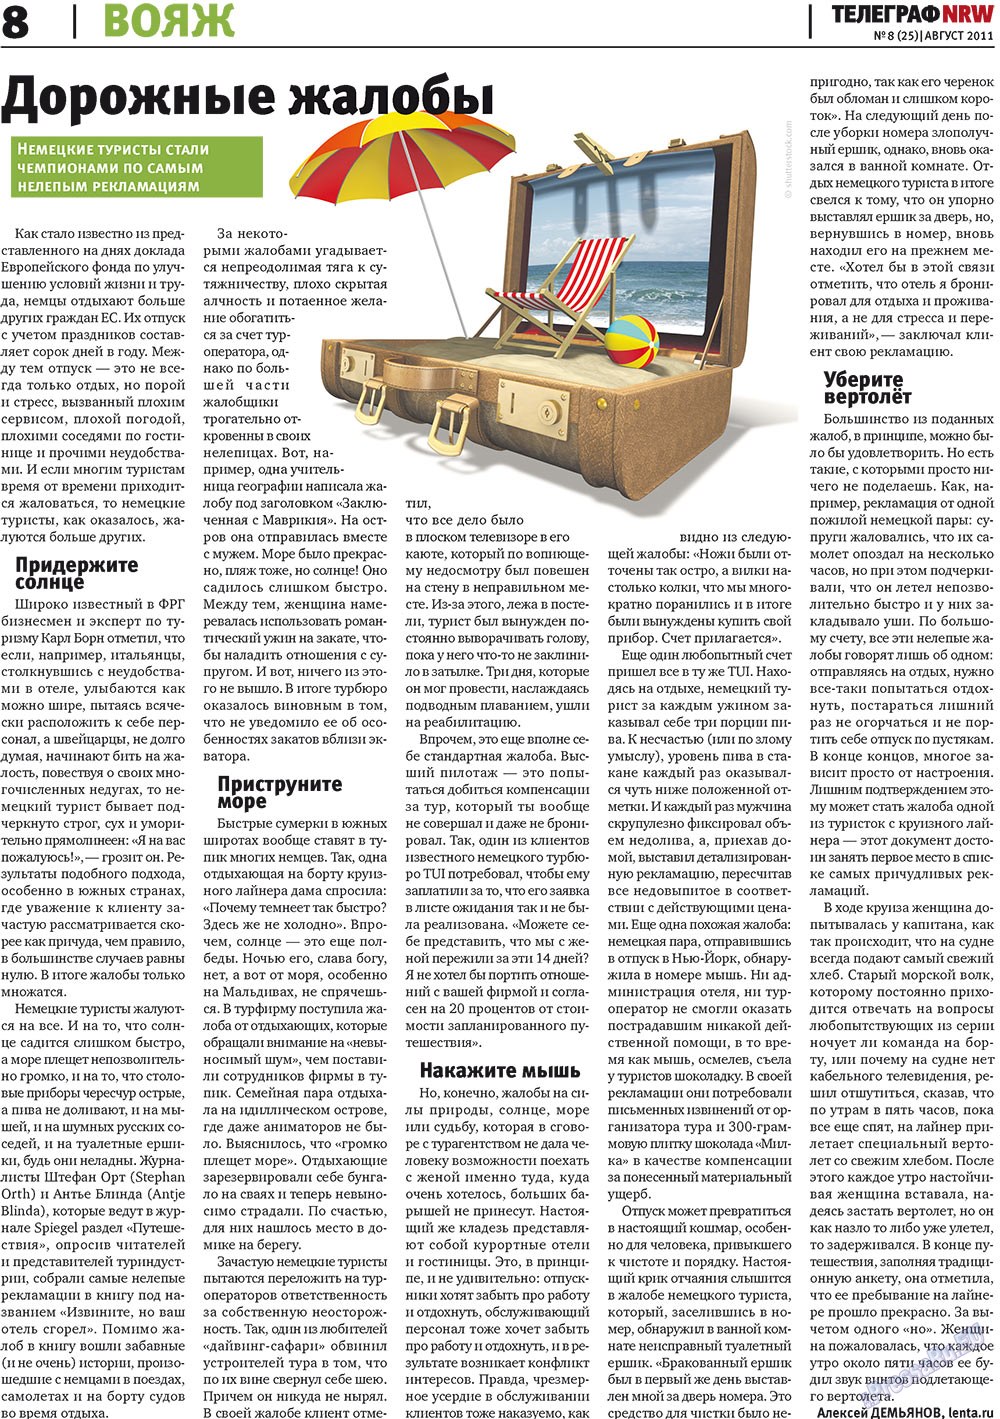 Телеграф NRW (газета). 2011 год, номер 8, стр. 8